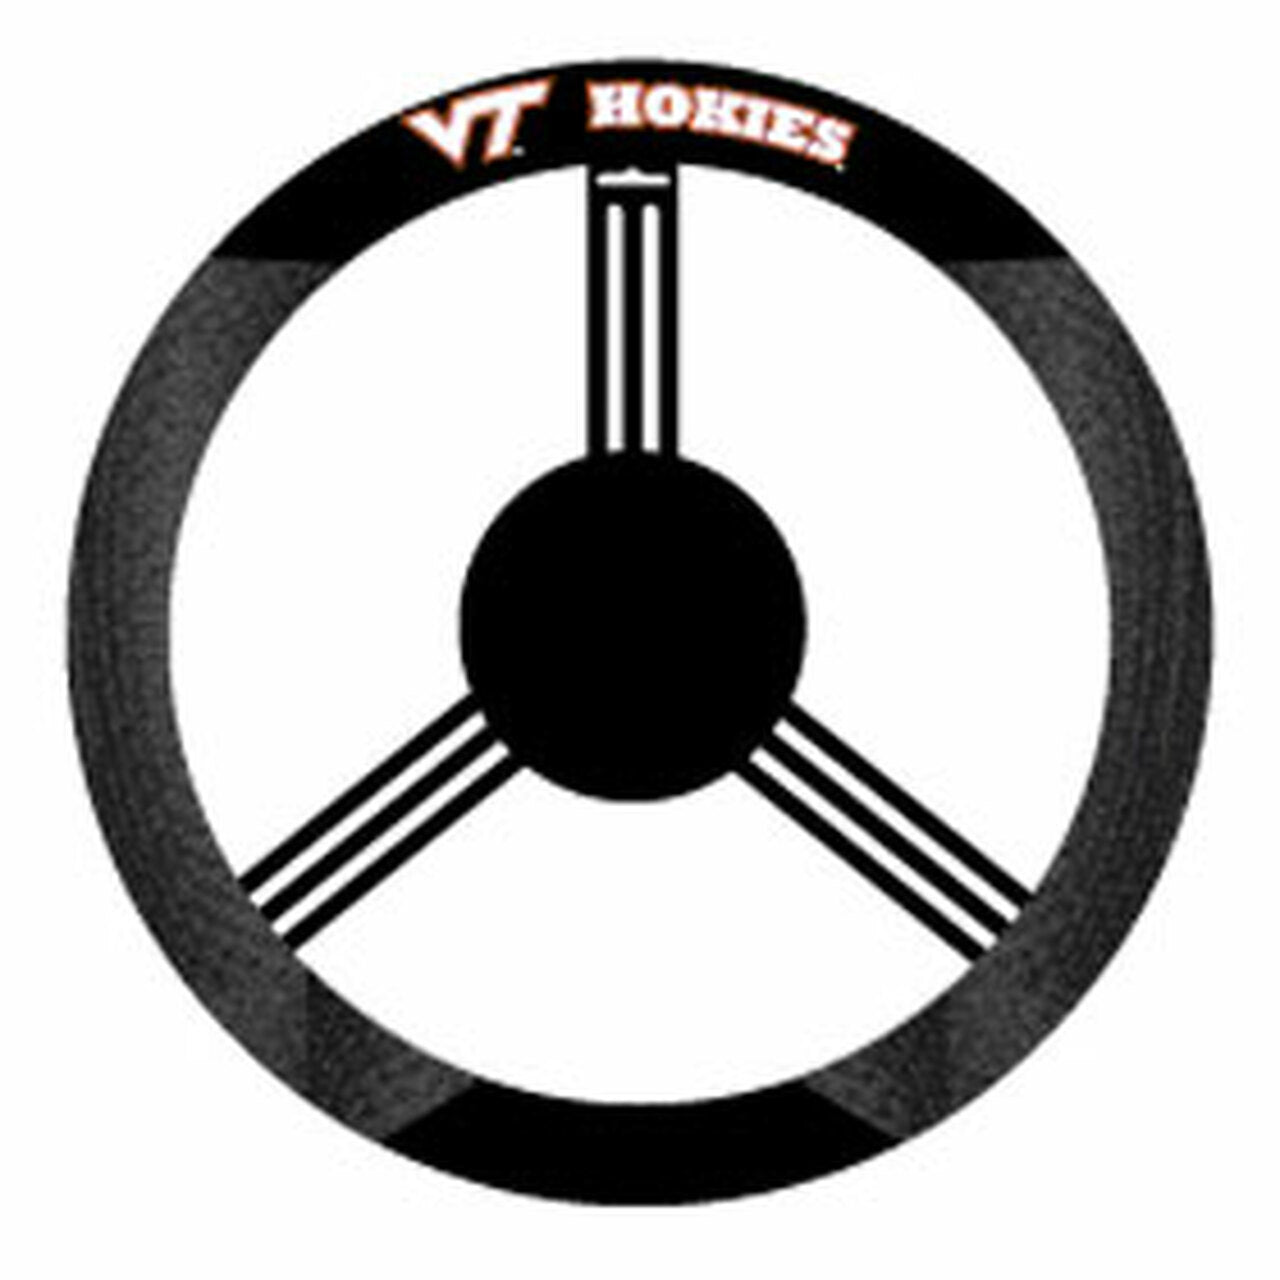 Virginia Tech Hokies Mesh Steering Wheel Cover by Fremont Die